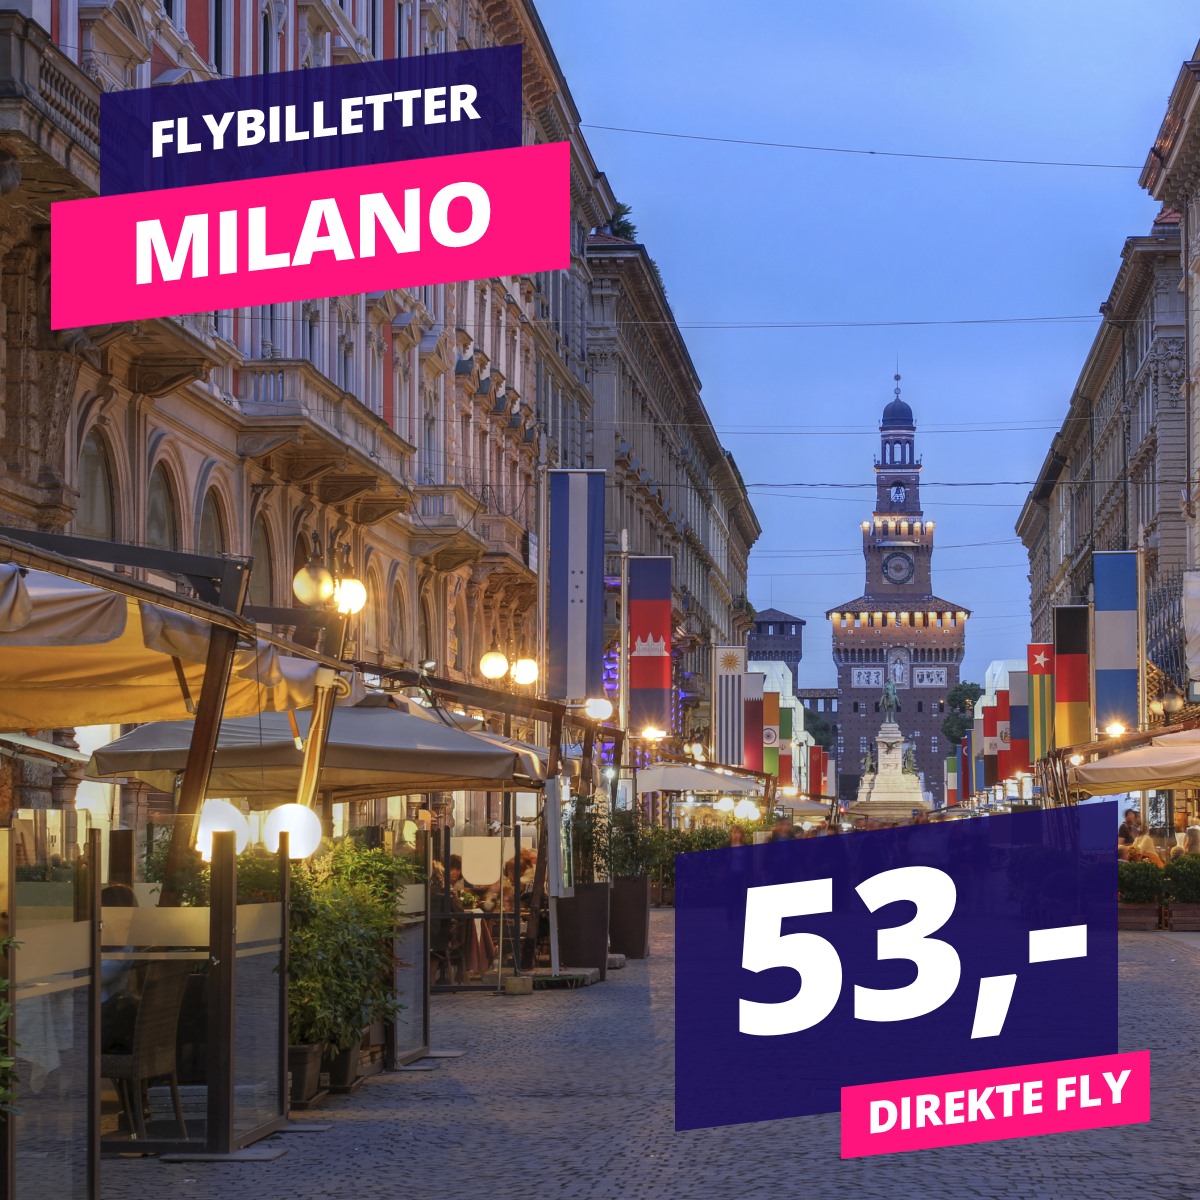 Rejs på forlænget weekend til Milano fra kun 53,-